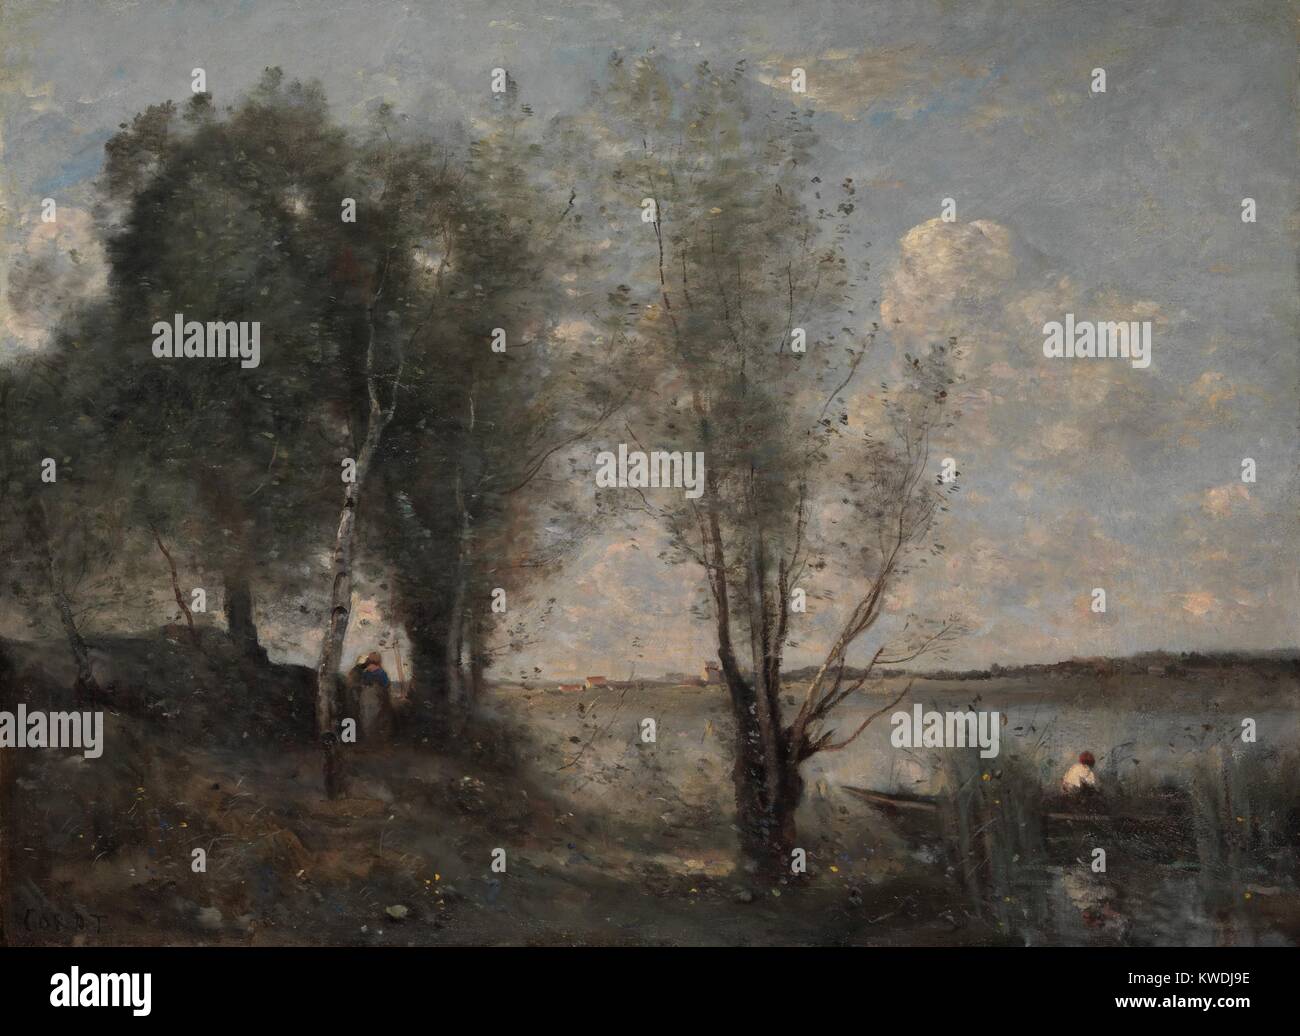 BOATMAN tra le canne, di Camille Corot, 1865, la pittura francese, olio su tela. Come molti di questi ultimi Corots studio paesaggi, è dipinta con pennellate feathery, una tavolozza più leggeri con toni di argento (BSLOC 2017 9 90) Foto Stock